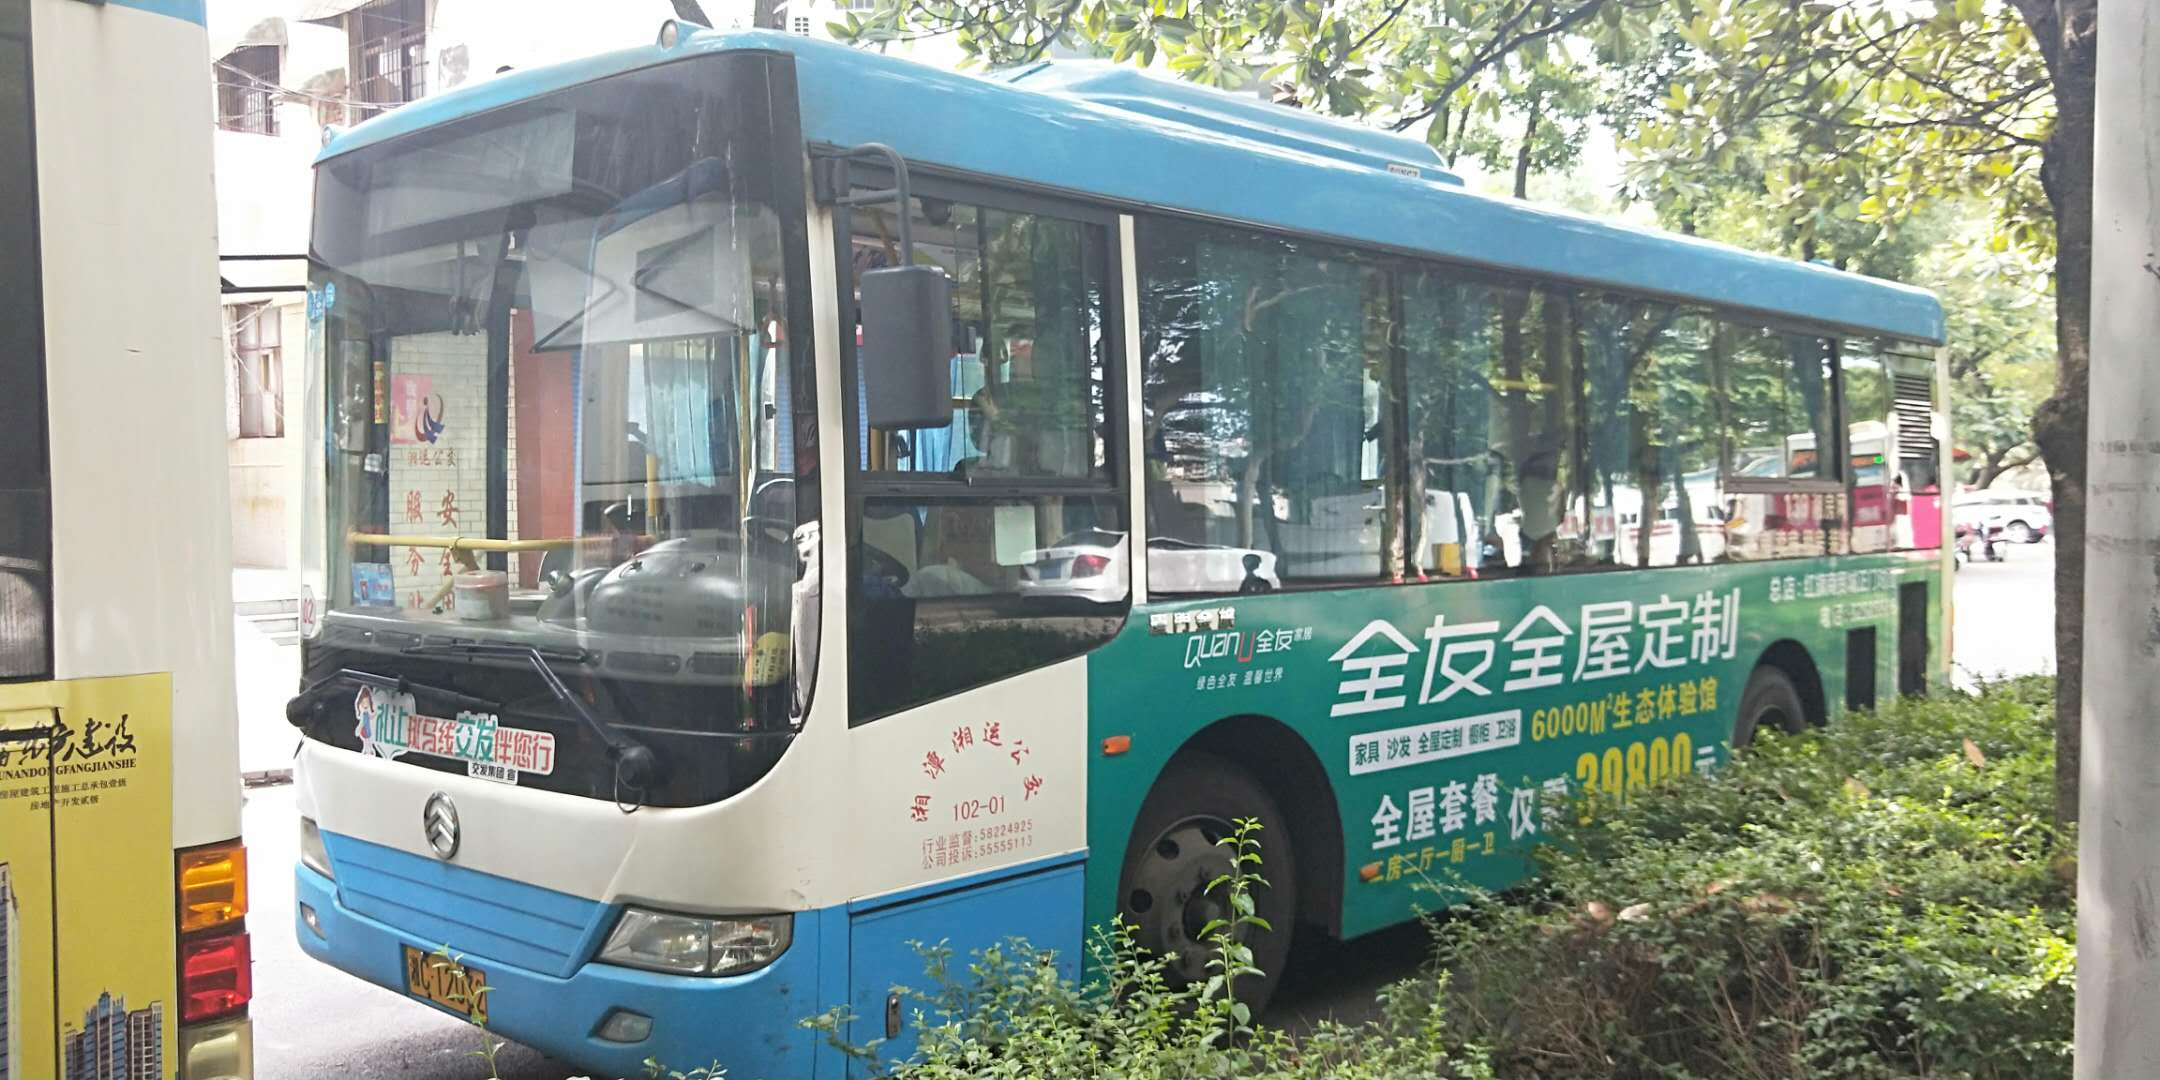 湖南湘潭市岳塘区126路公交车车身